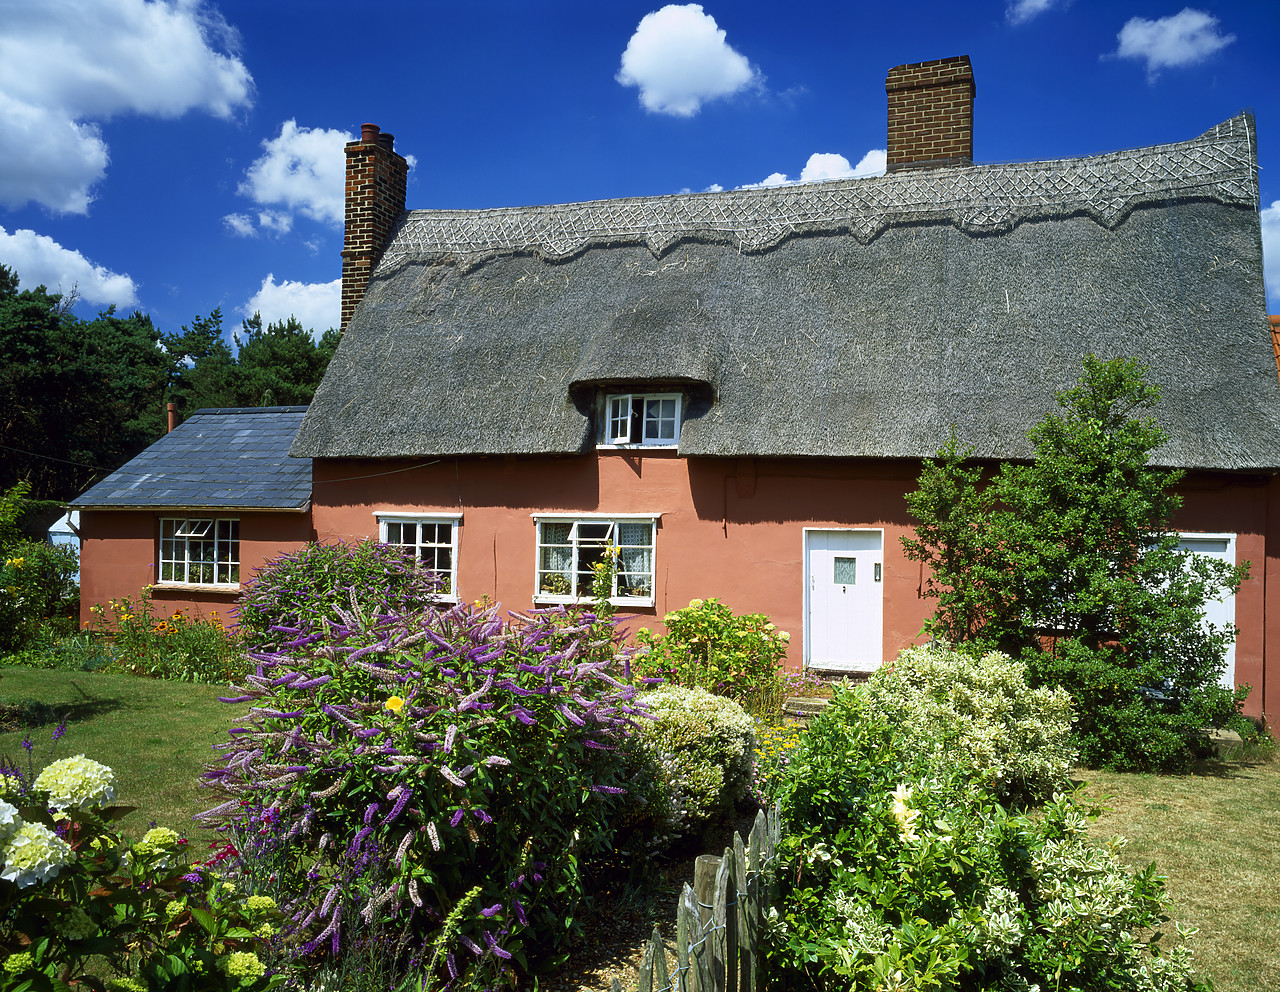 #040161-1 - Thatched Cottage & Garden, Essex, England